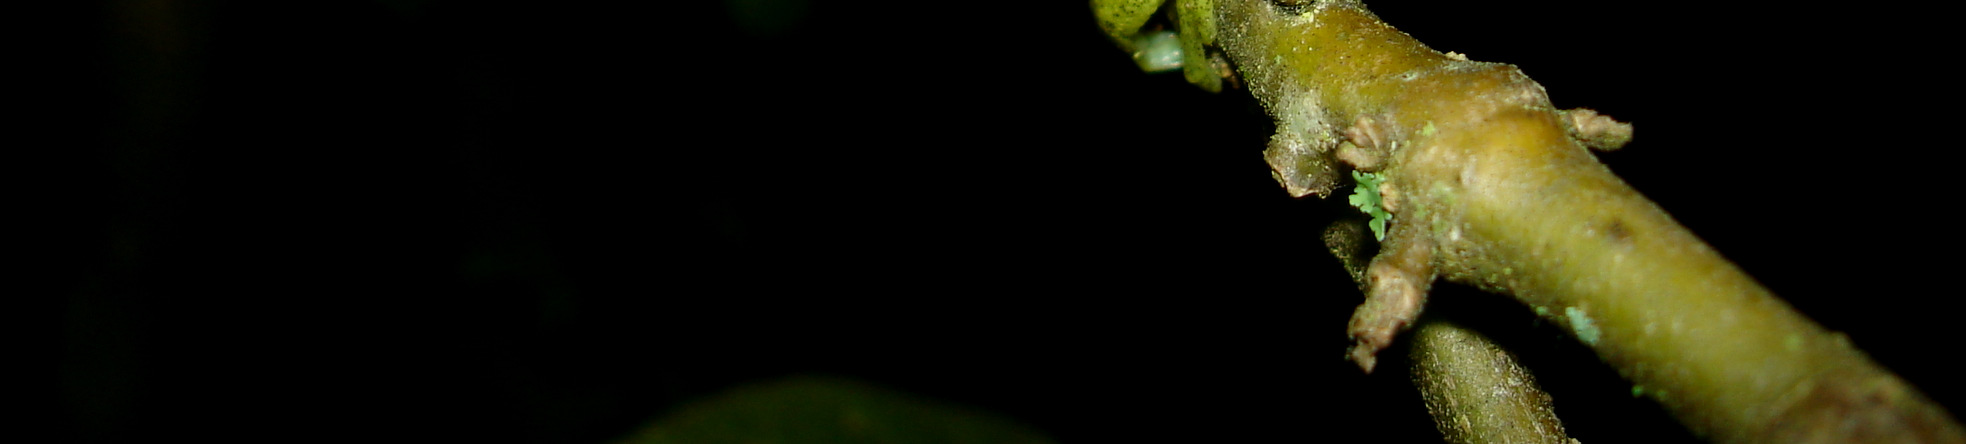 Proceratophrys bigibbosa consta na lista mundial de espécies ameaçadas de extinção (IUCN, 2008), na categoria quase ameaçada.